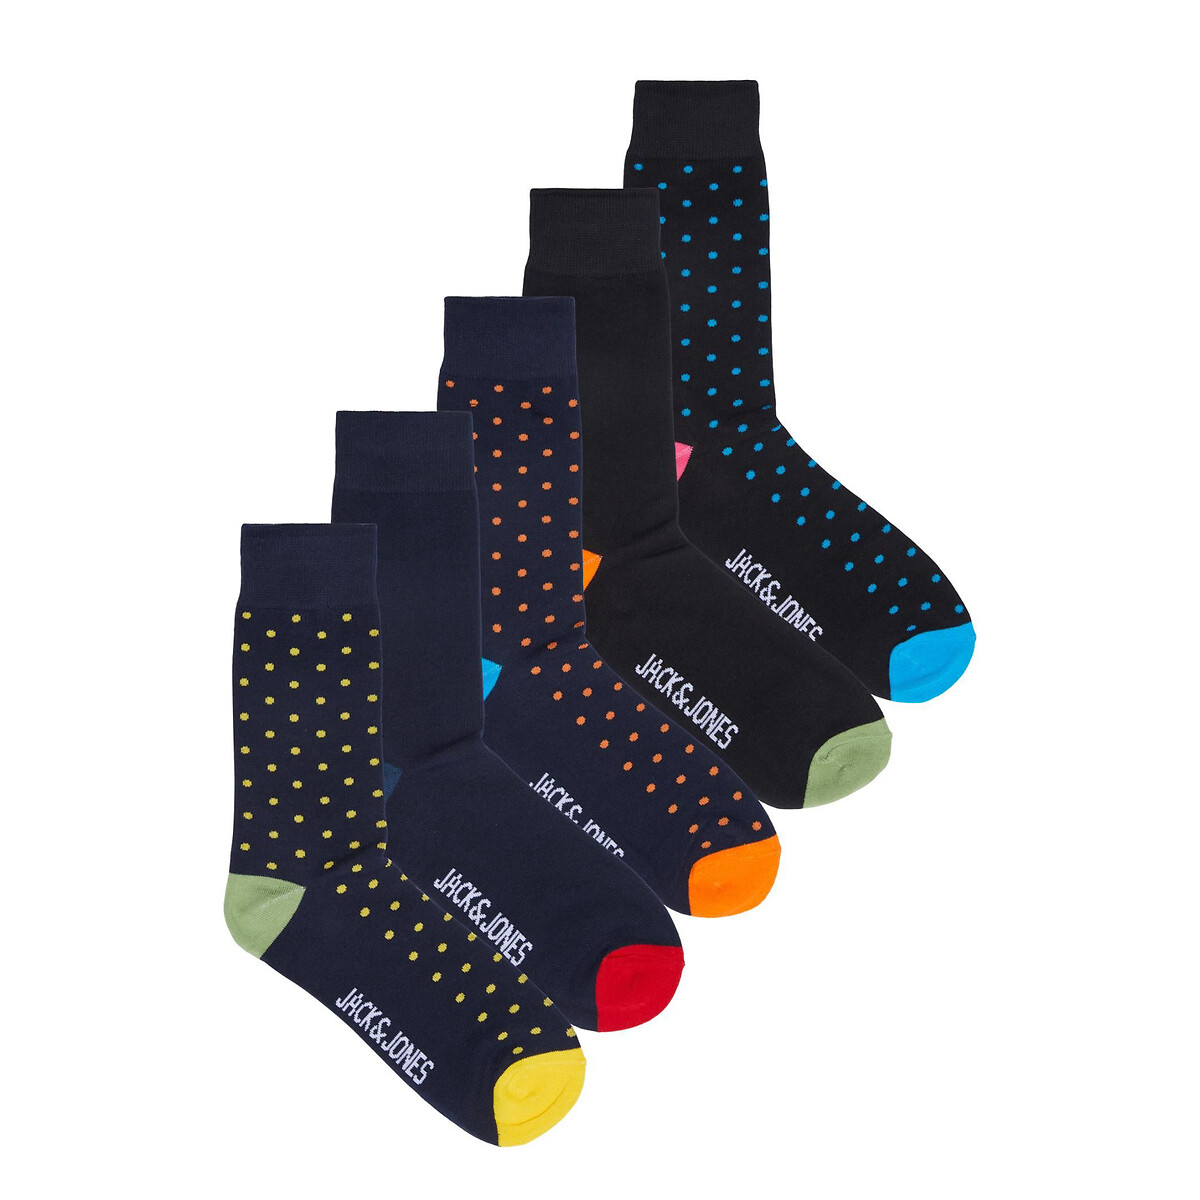 AOFOX 6 paires de chaussettes amusantes pour hommes à motifs déquipage coloré fantaisie fantaisie fantaisie Chaussettes décontractées drôles pour la maison dhiver de Noël à lintérieur 